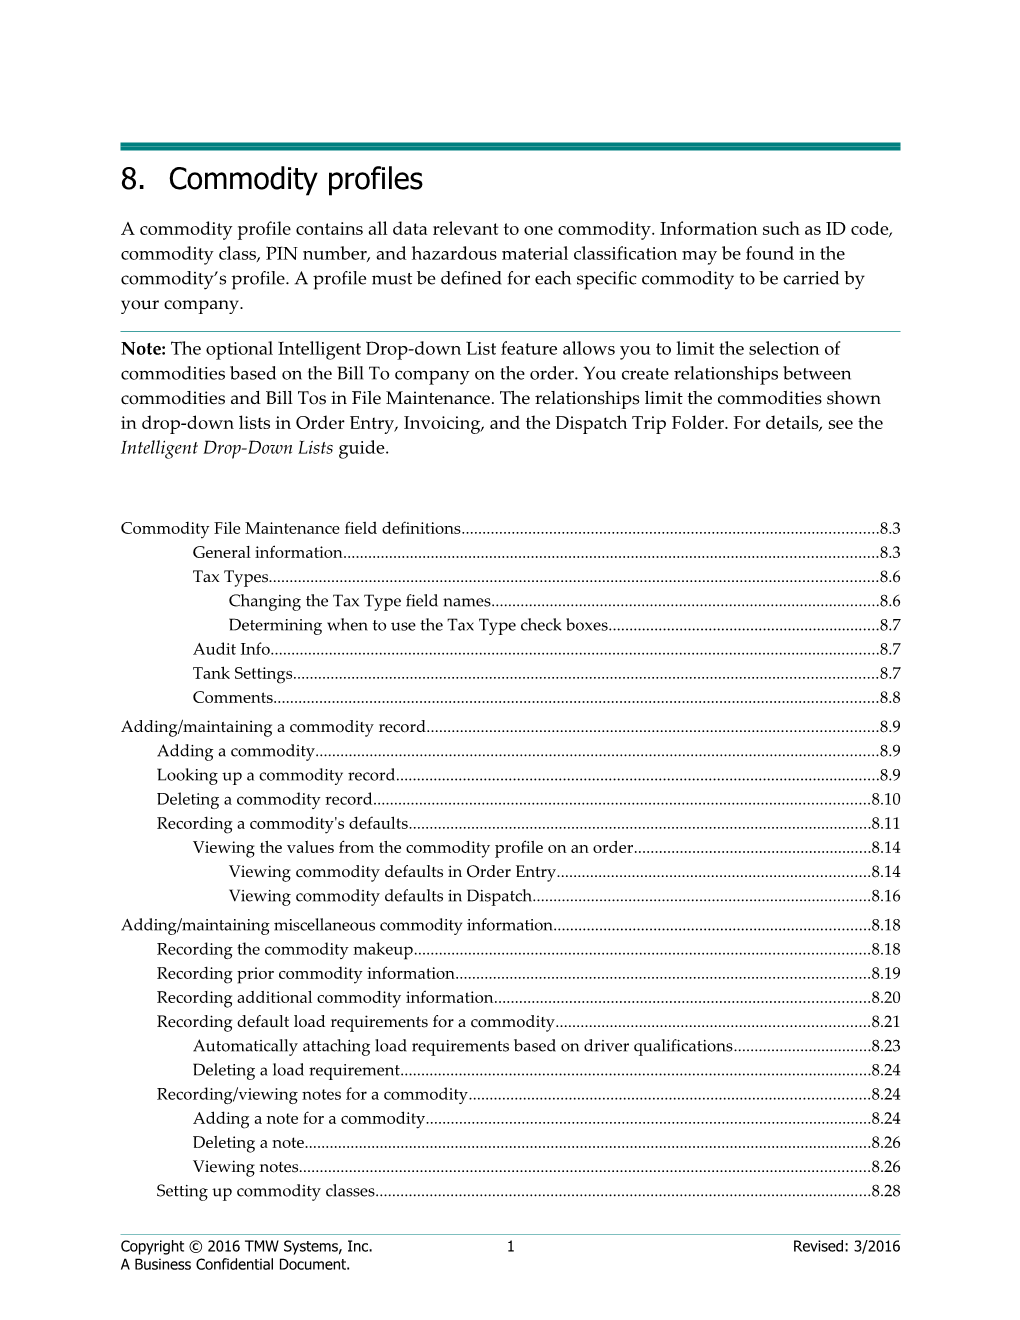 8.Commodity Profiles